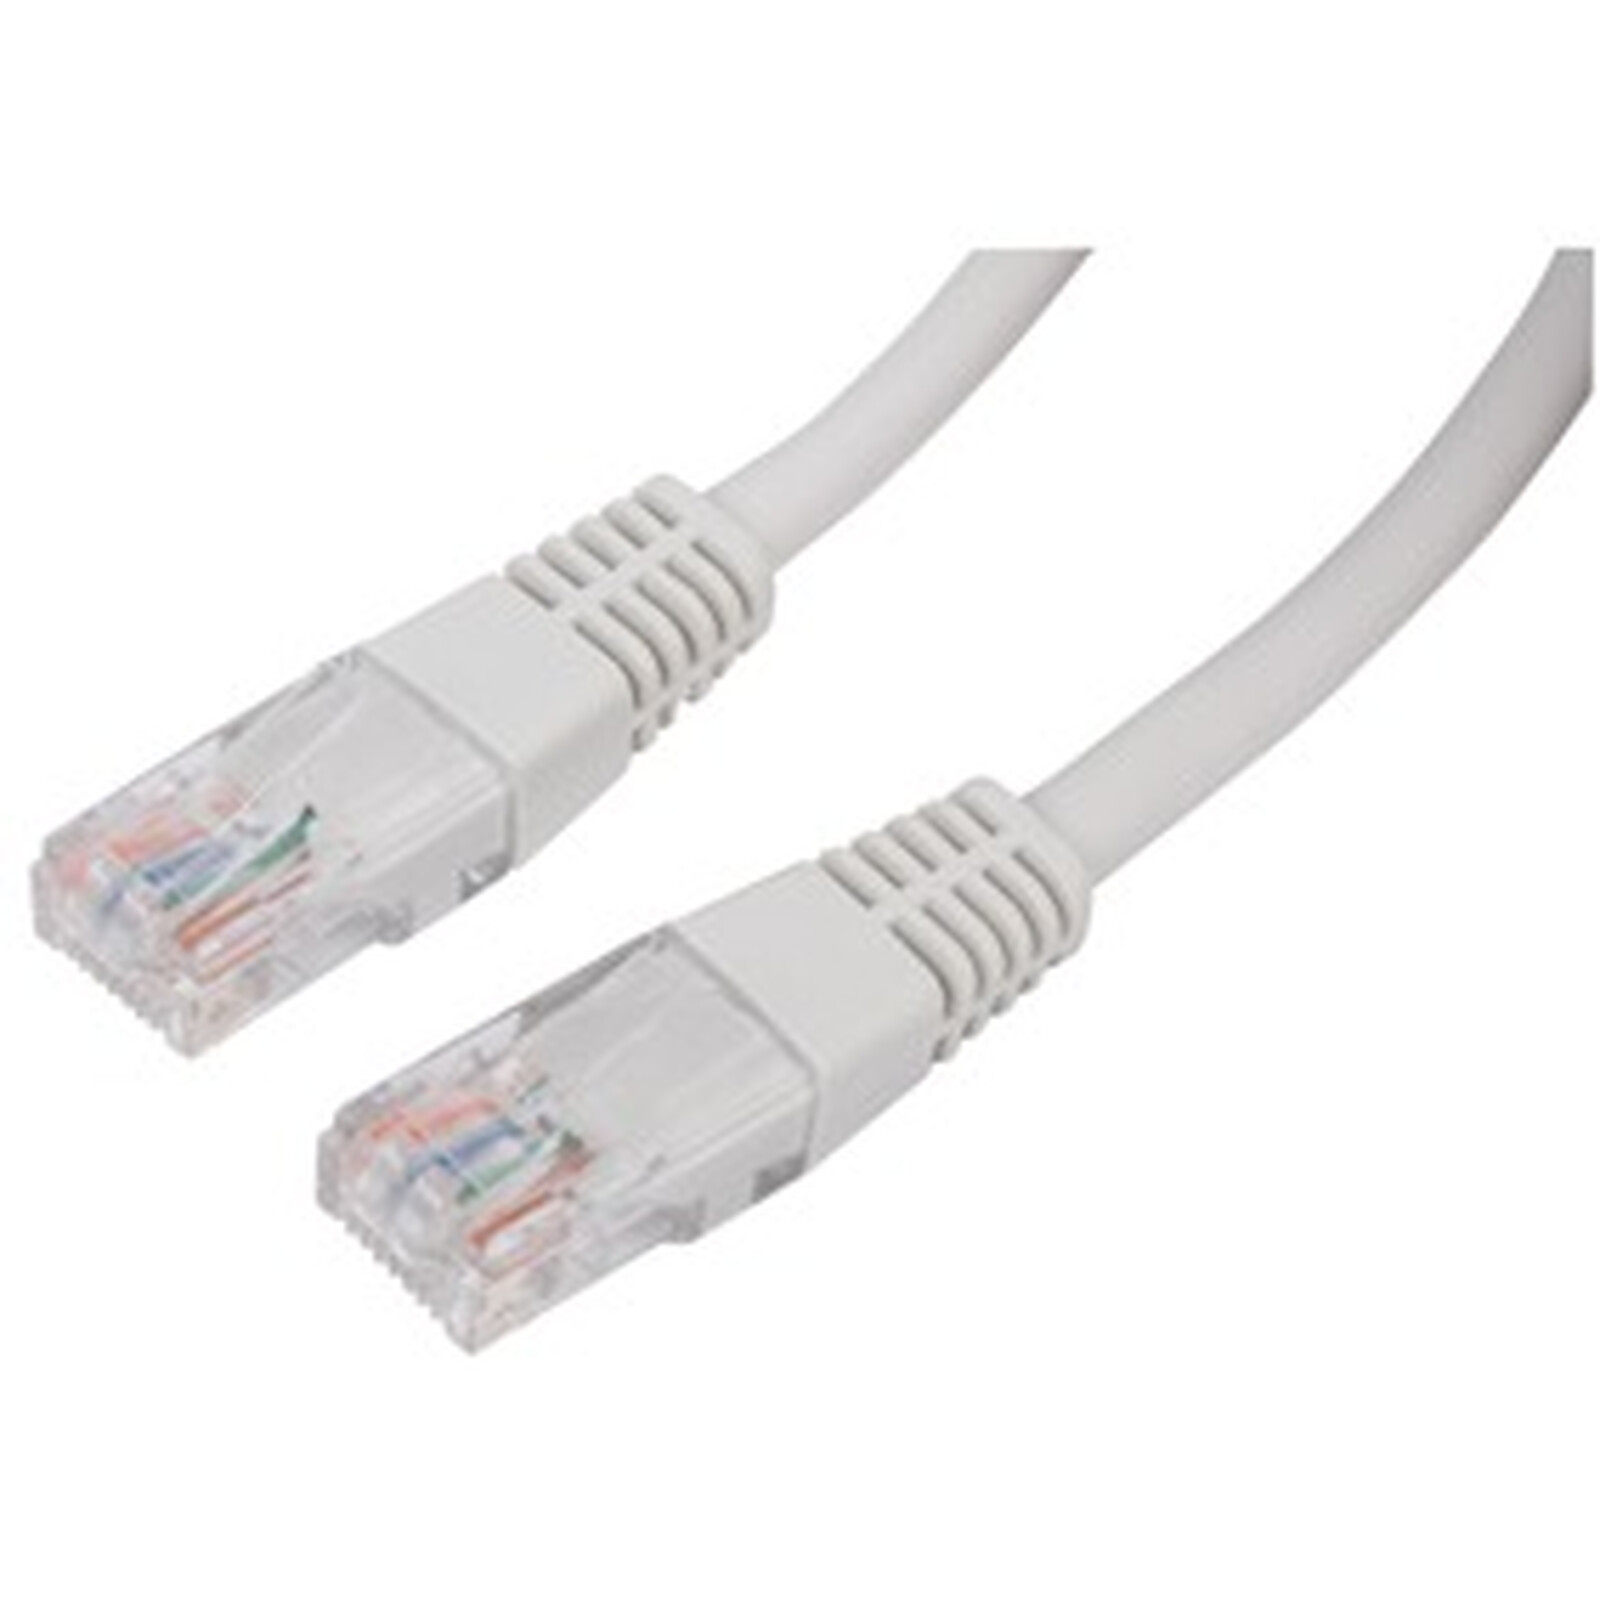 Câble ethernet RJ45 CAT7 S/FTP - Noir - 20 cm - Textorm - Cable